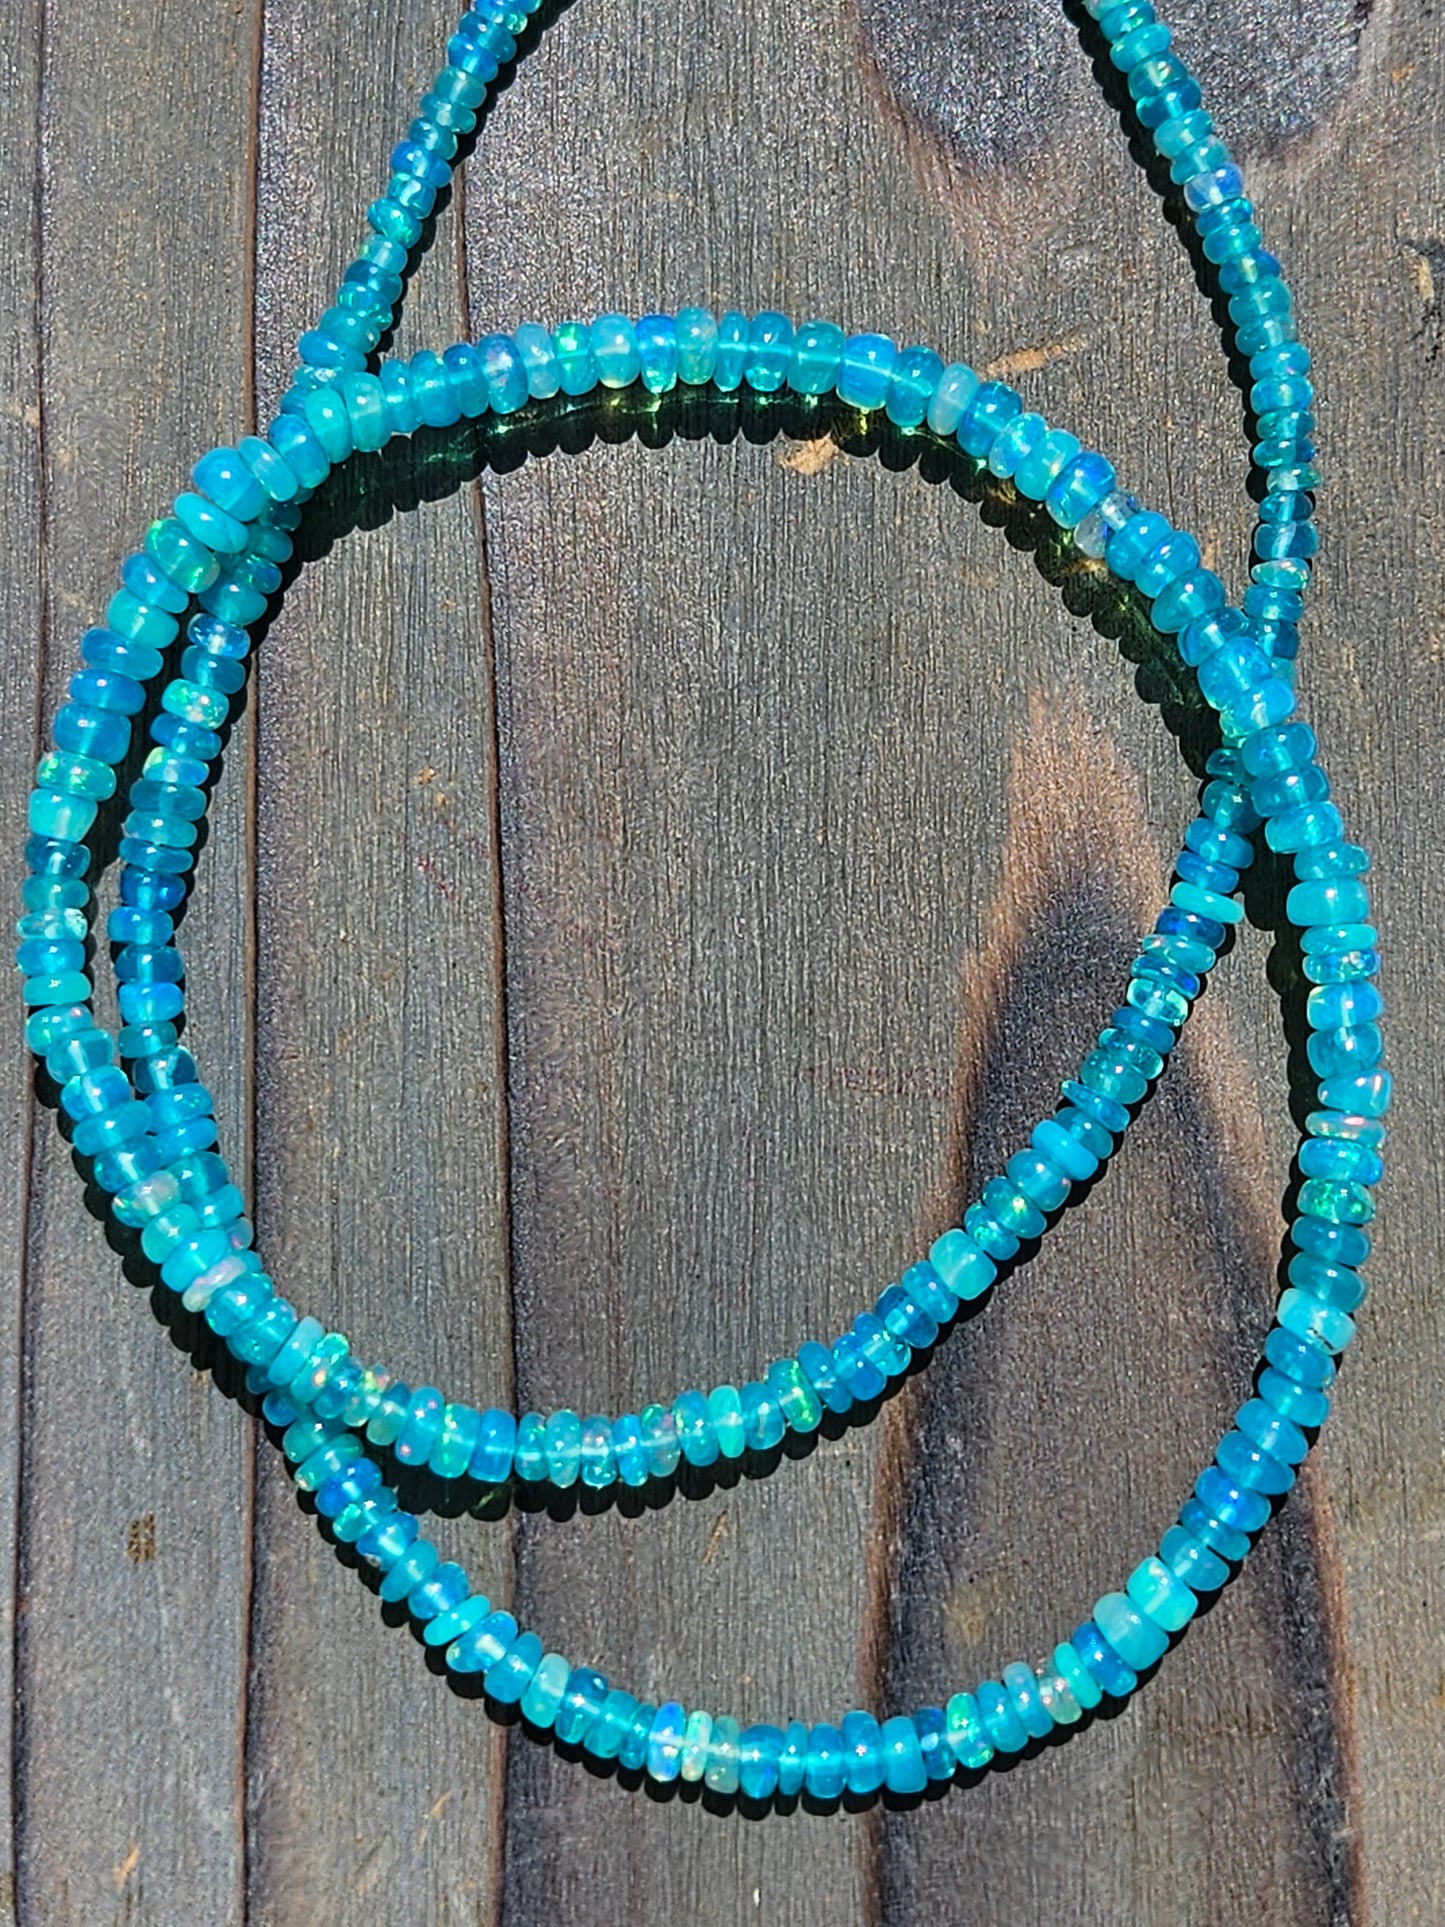 Ethiopian Opal Necklace